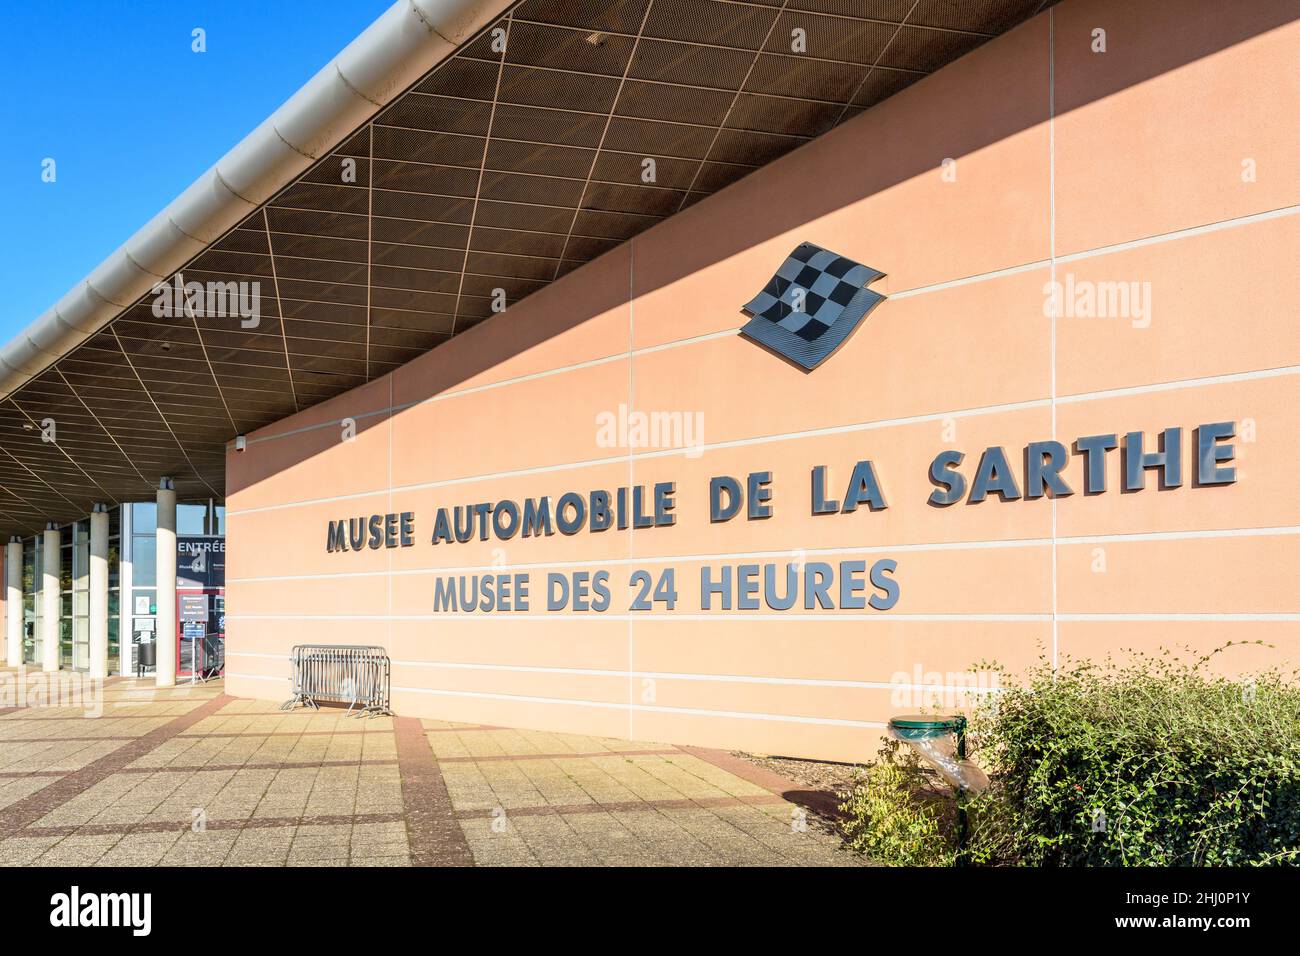 Entrance of the Musée Automobile de la Sarthe and Musée des 24 Heures in Le Mans, France. Stock Photo